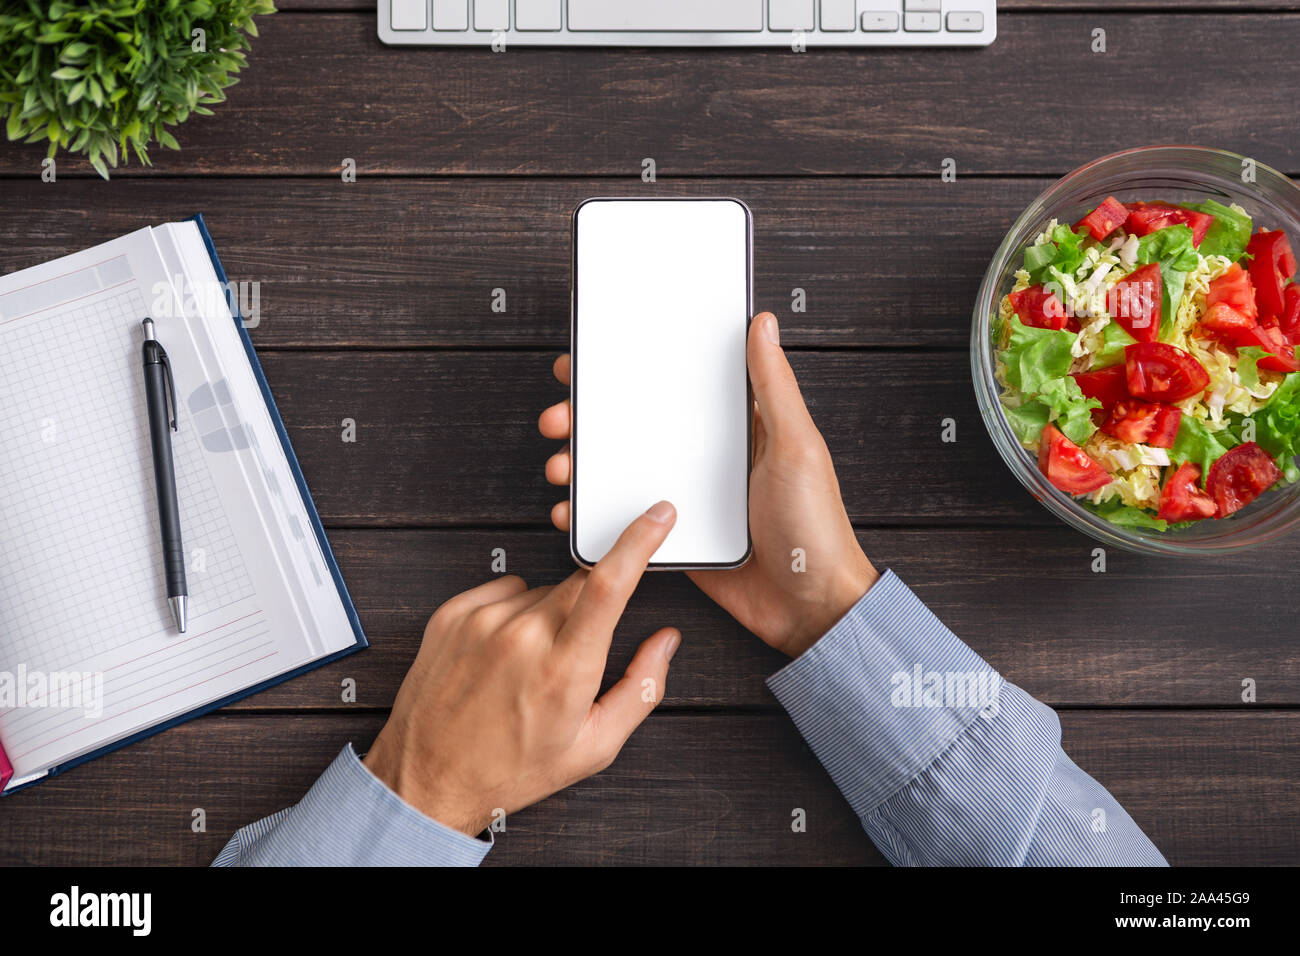 Mann mit Smartphone mit leerer Bildschirm und Essen Salat Stockfoto